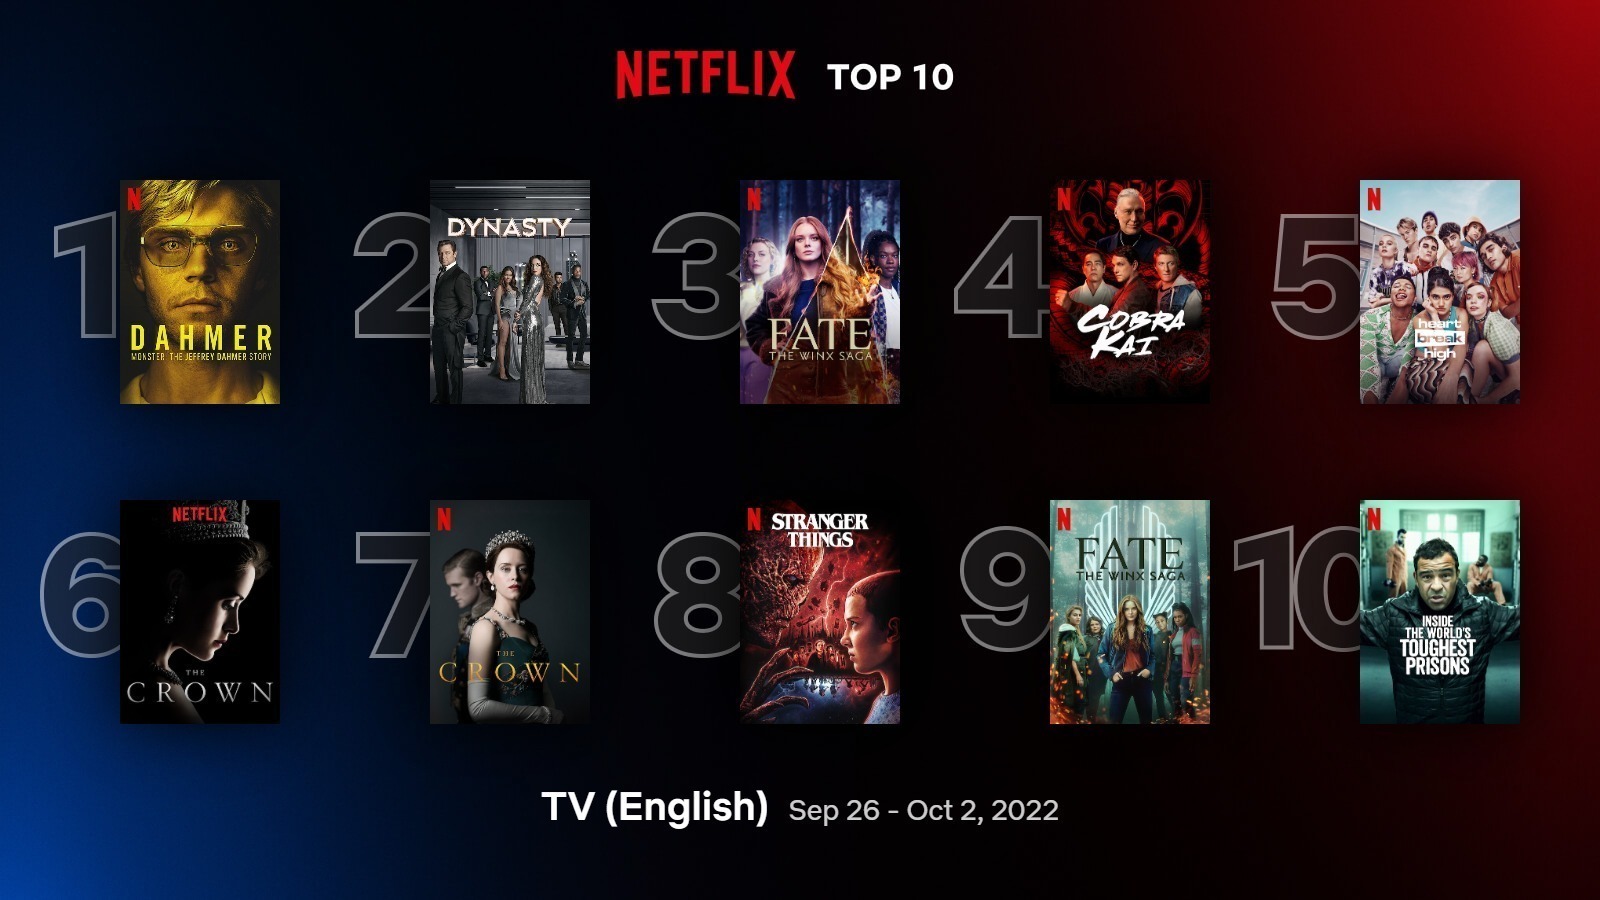 Imagem mostra a lista das séries mais assistidas da Netflix nas últimas duas semanas, com Dahmer liderando o ranking